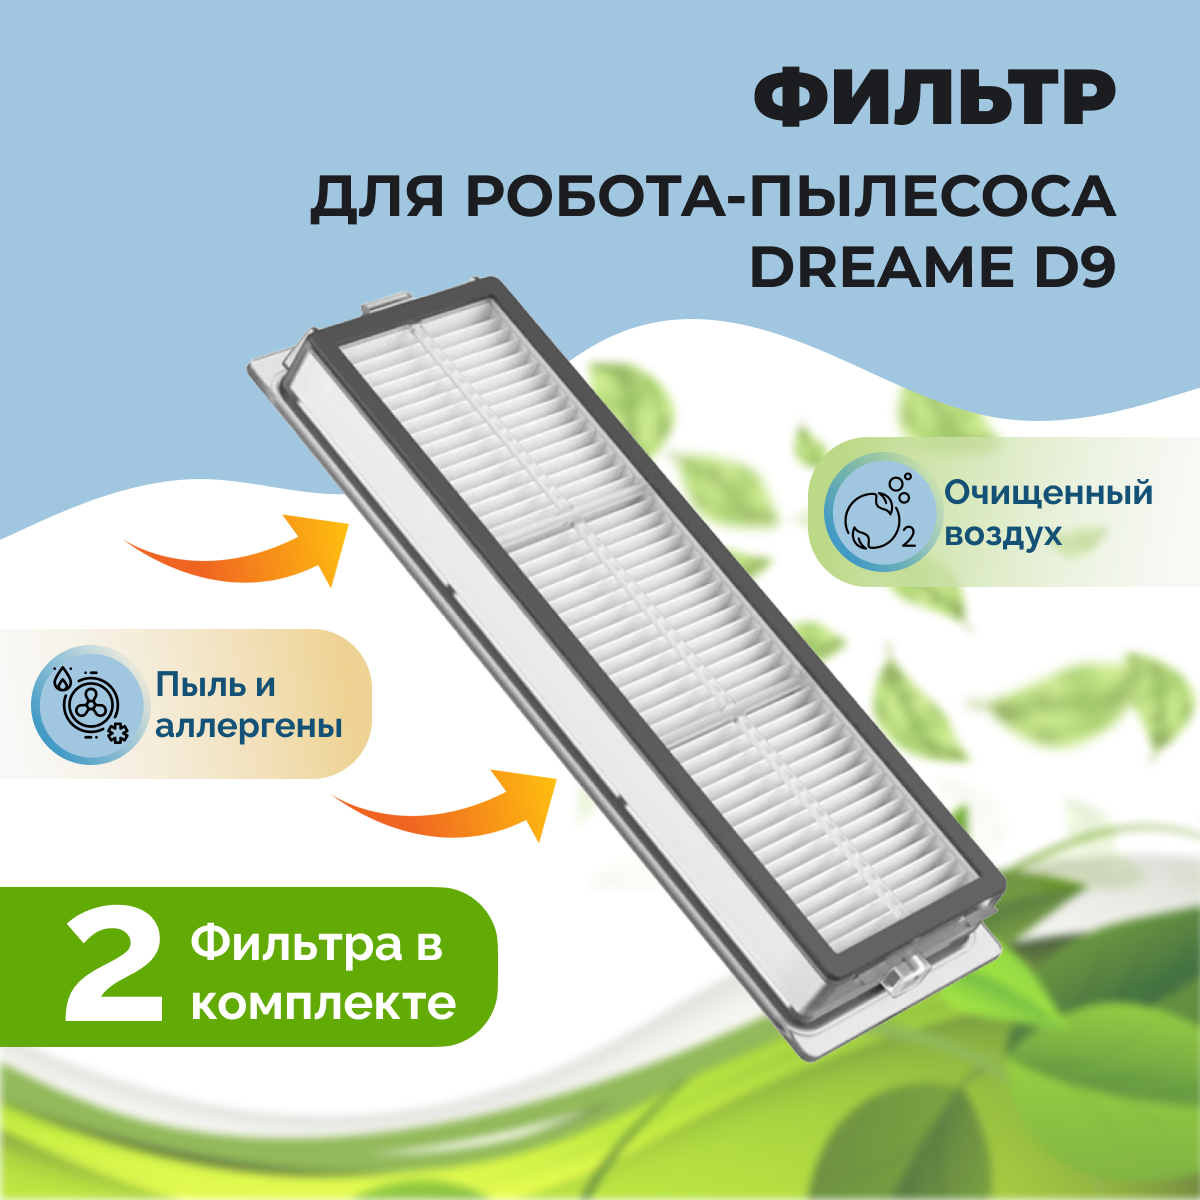 Фильтры для робота-пылесоса Dreame D9, 2 штуки 558100